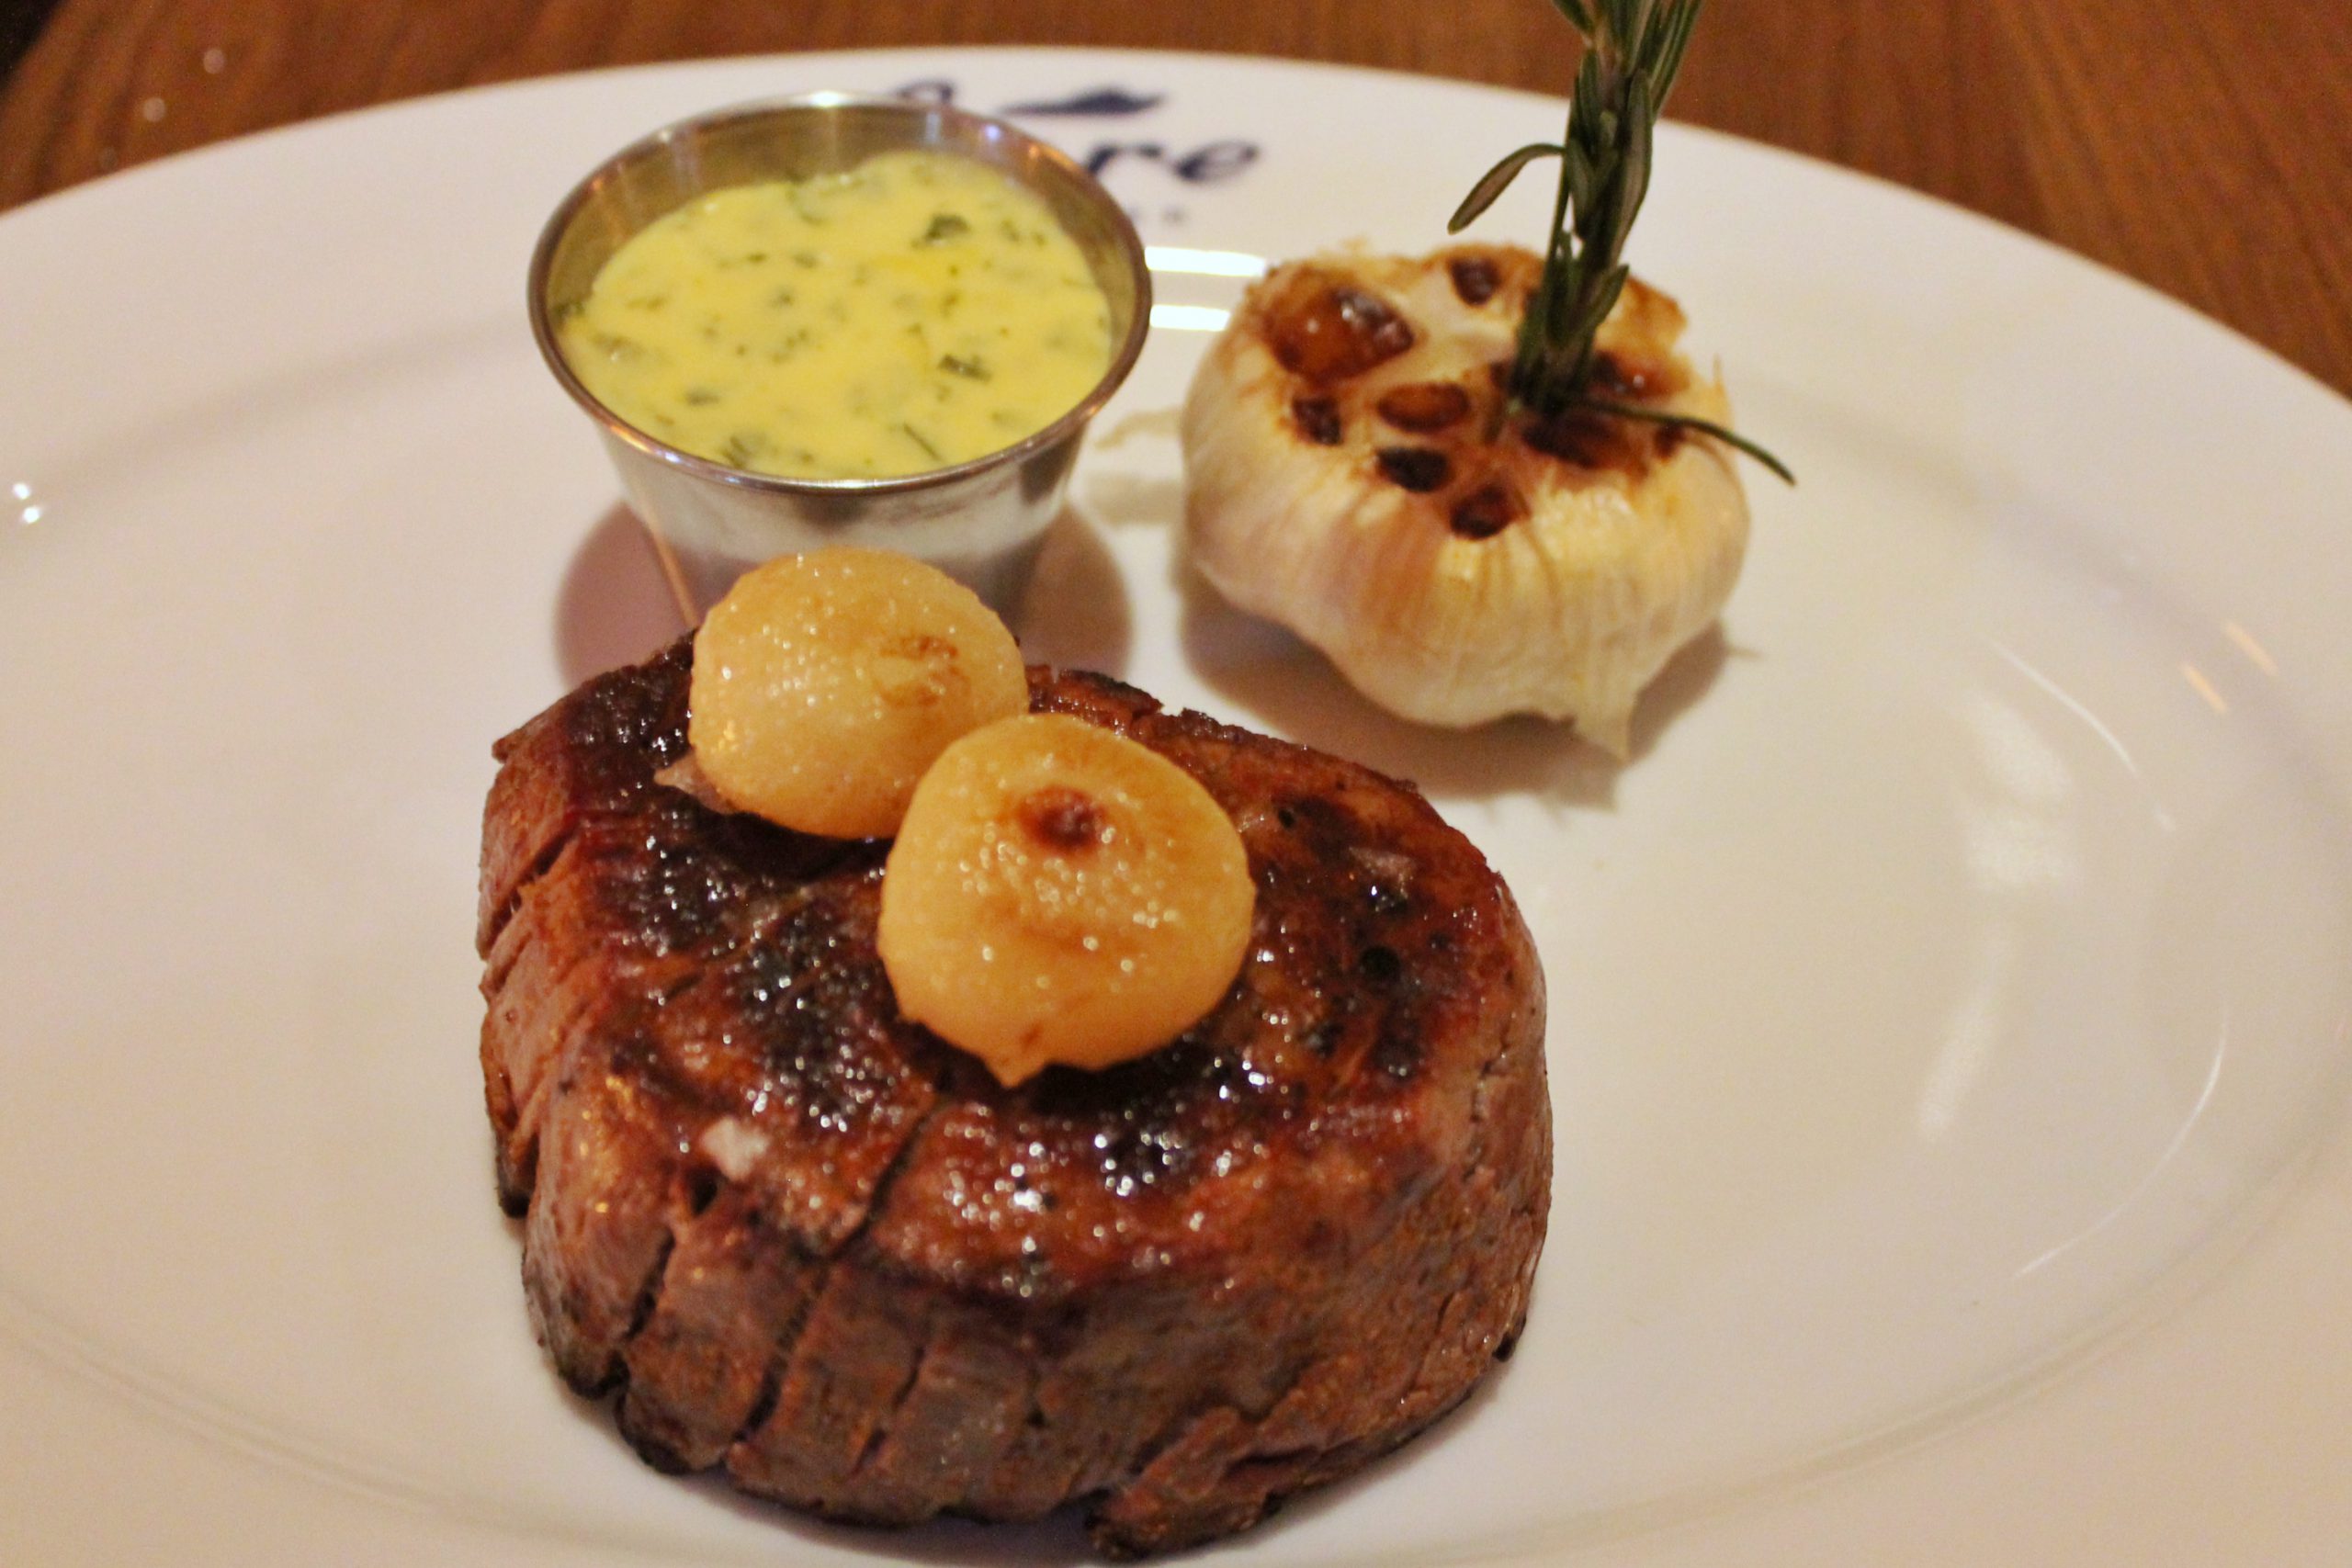 Chicago bietet ein breites Spektrum an luxuriösen Restaurants und ist bekannt für seine erstklassigen Steaks